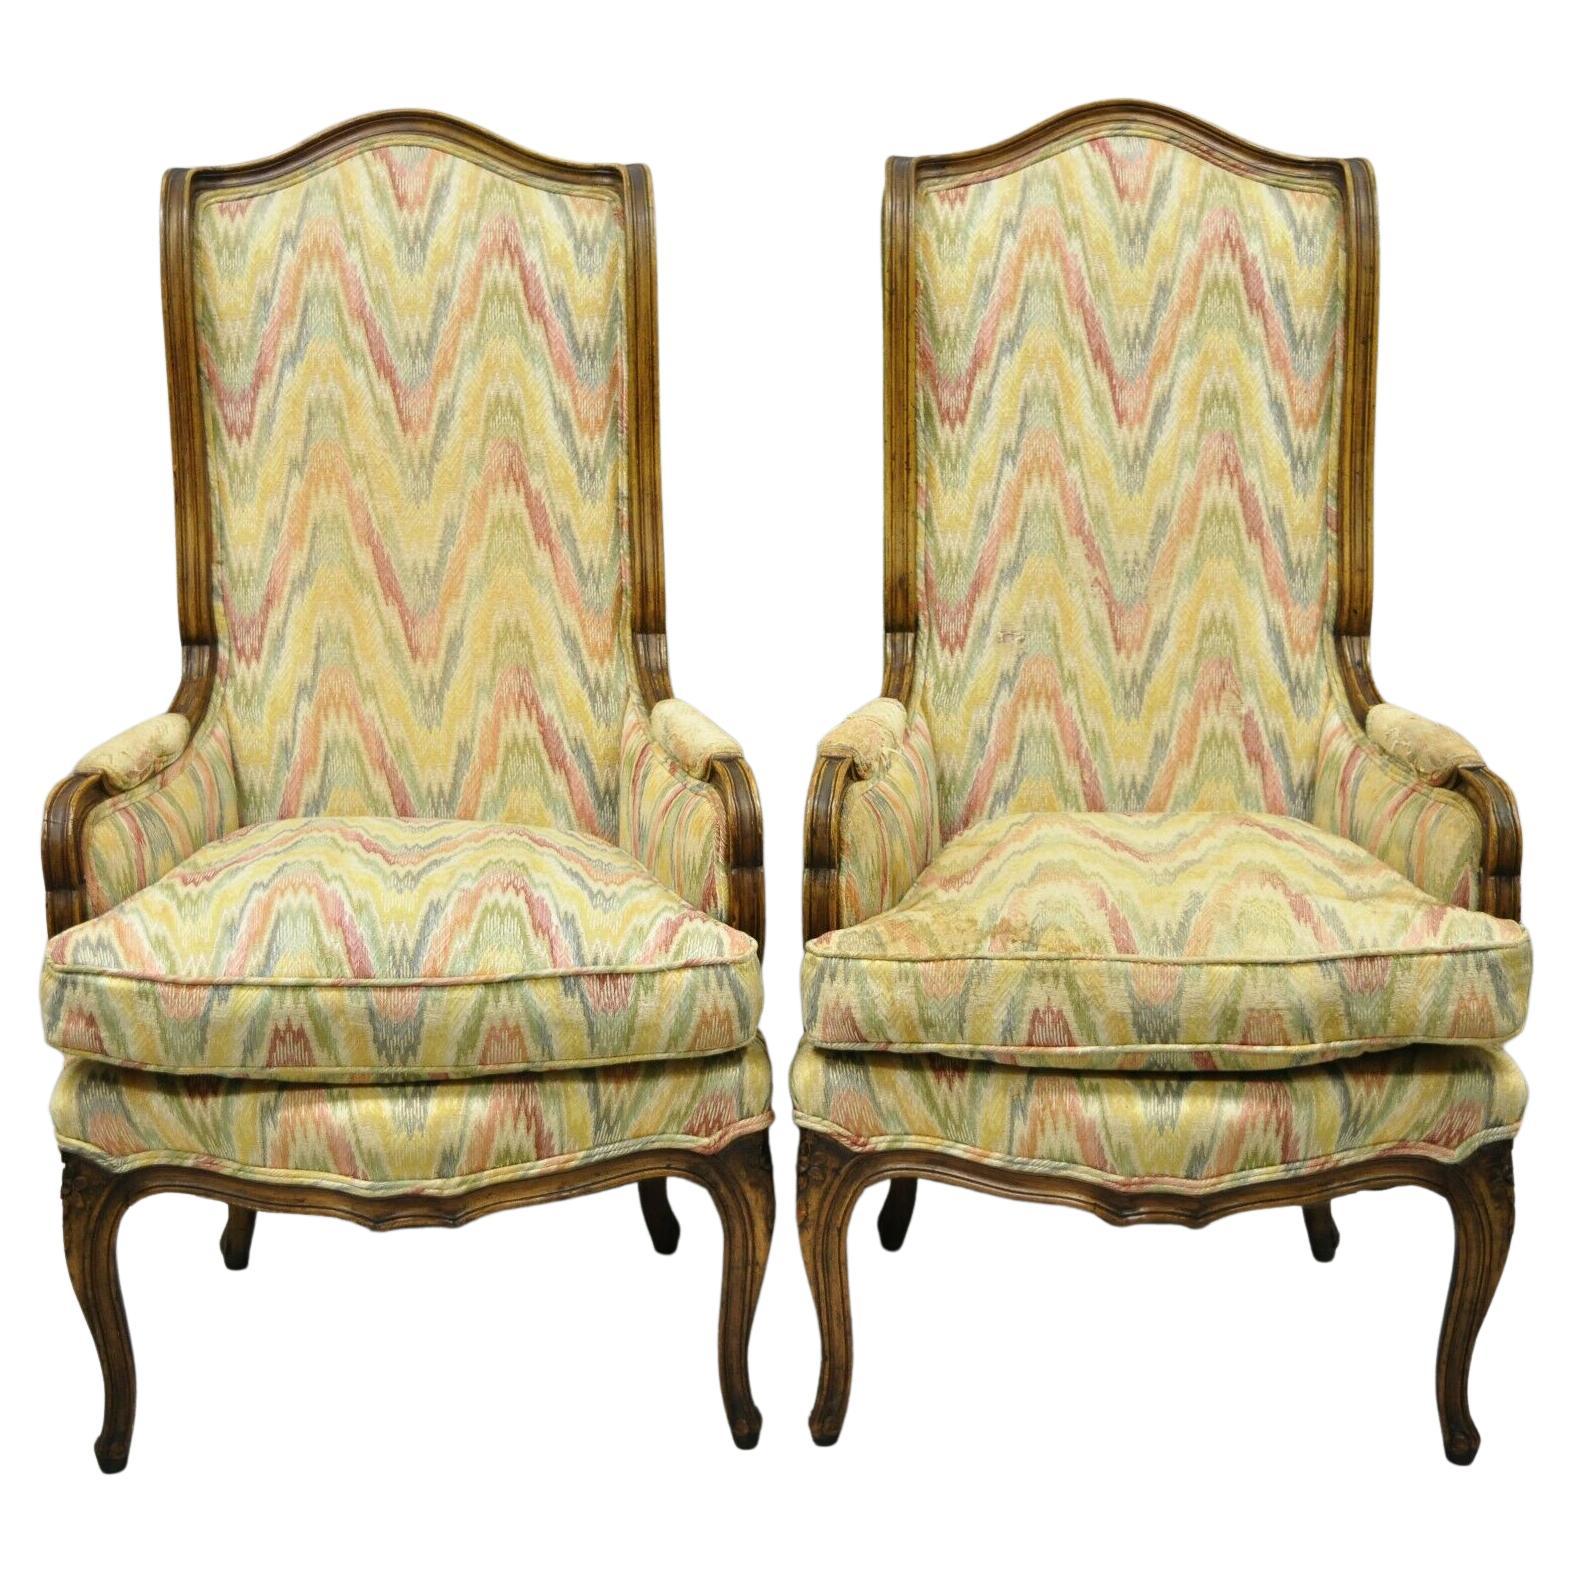 Paire de chaises provinciales françaises vintage Louis XV à haut dossier étroit en forme de B - une paire